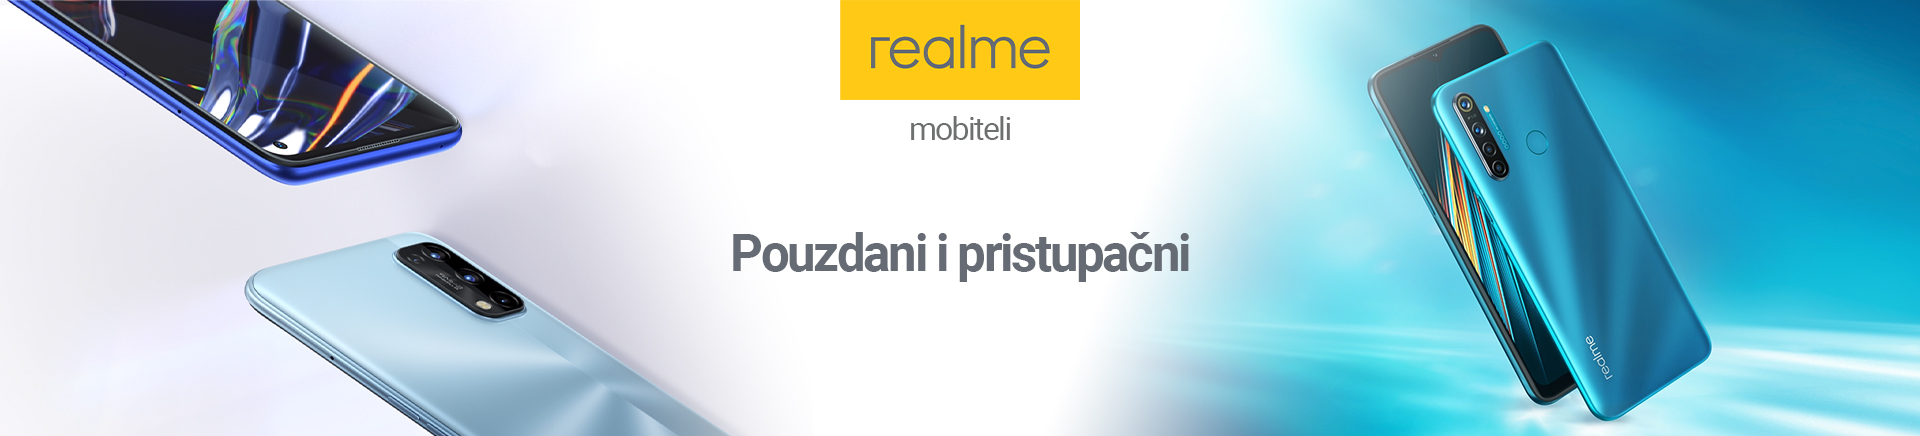 BiH Realme pouzdani pristupacni landing MOBILE 380 X 436.jpg